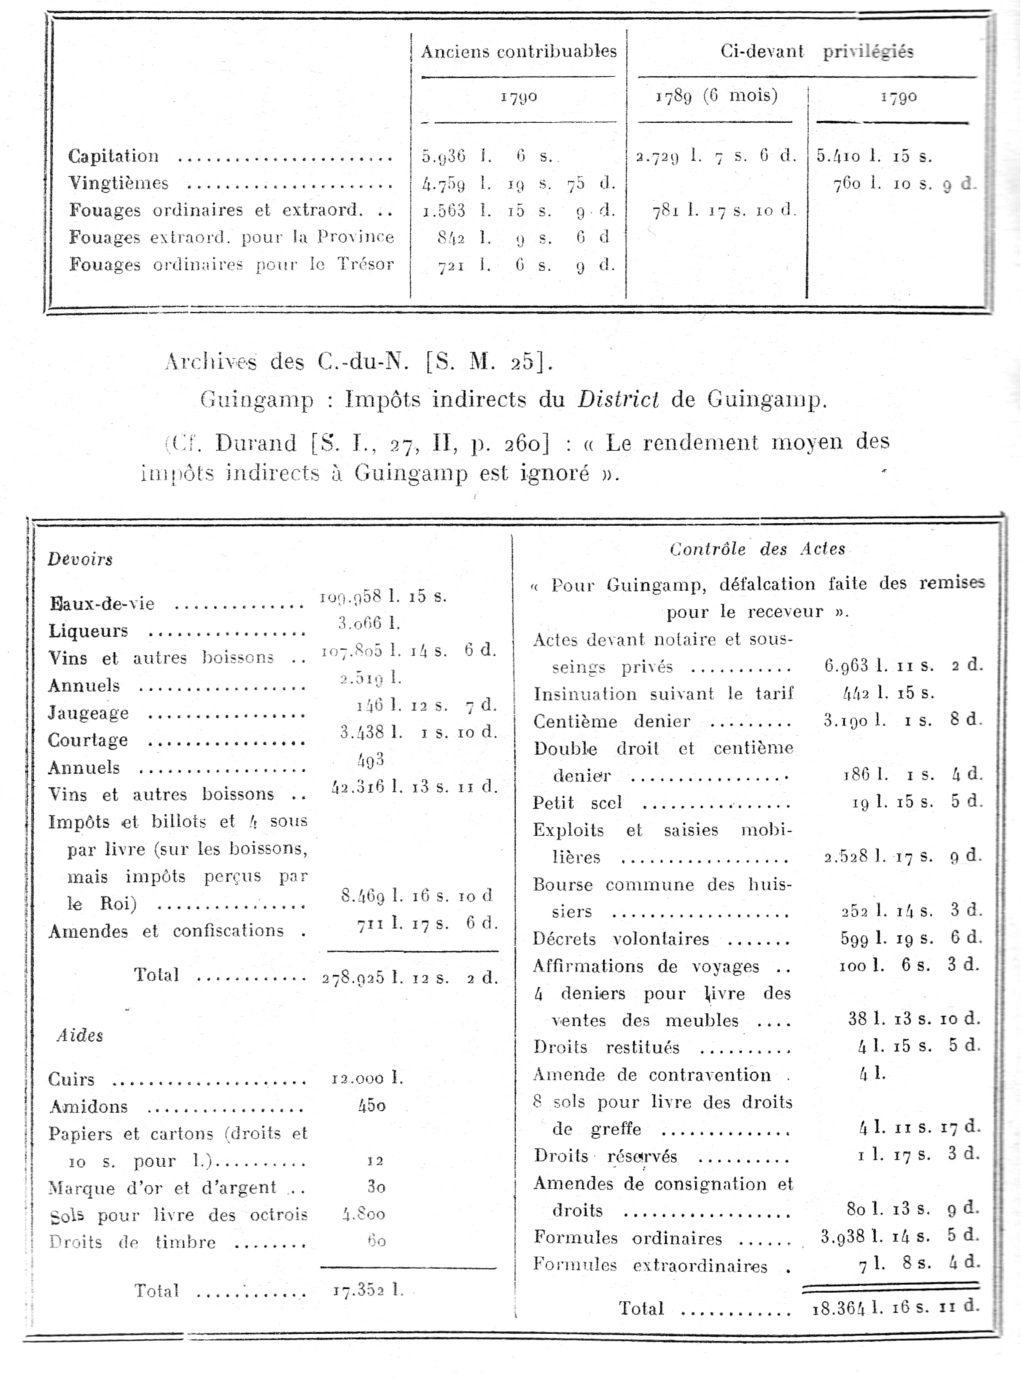 Impositions de Guingamp (Bretagne) en 1790 et des 6 derniers mois de 1789 pour les privilgis.